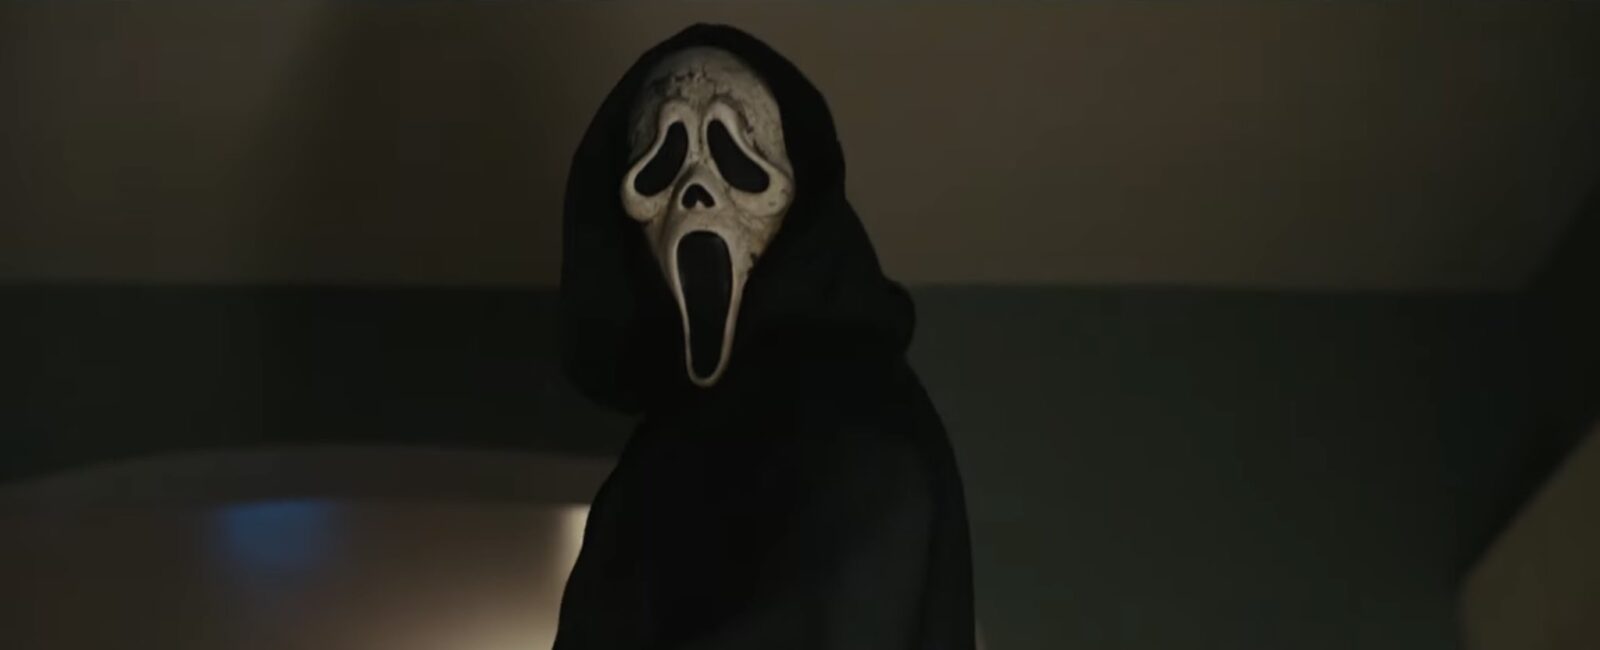 Pânico VI nova imagem oficial do Ghostface